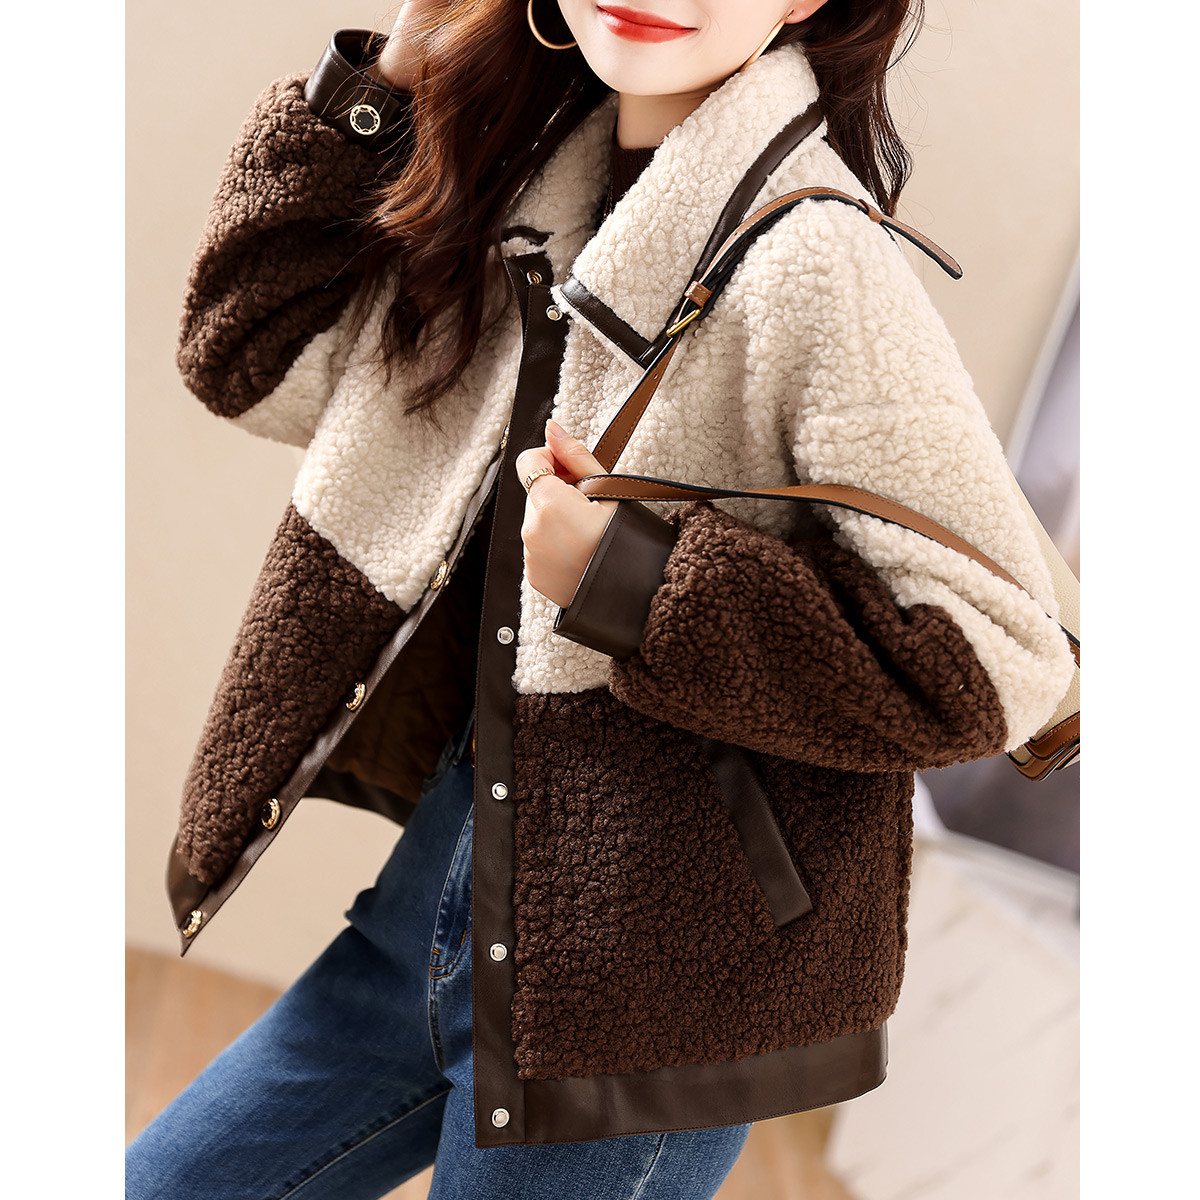 Casual short splice velvet jacket Korean style coat